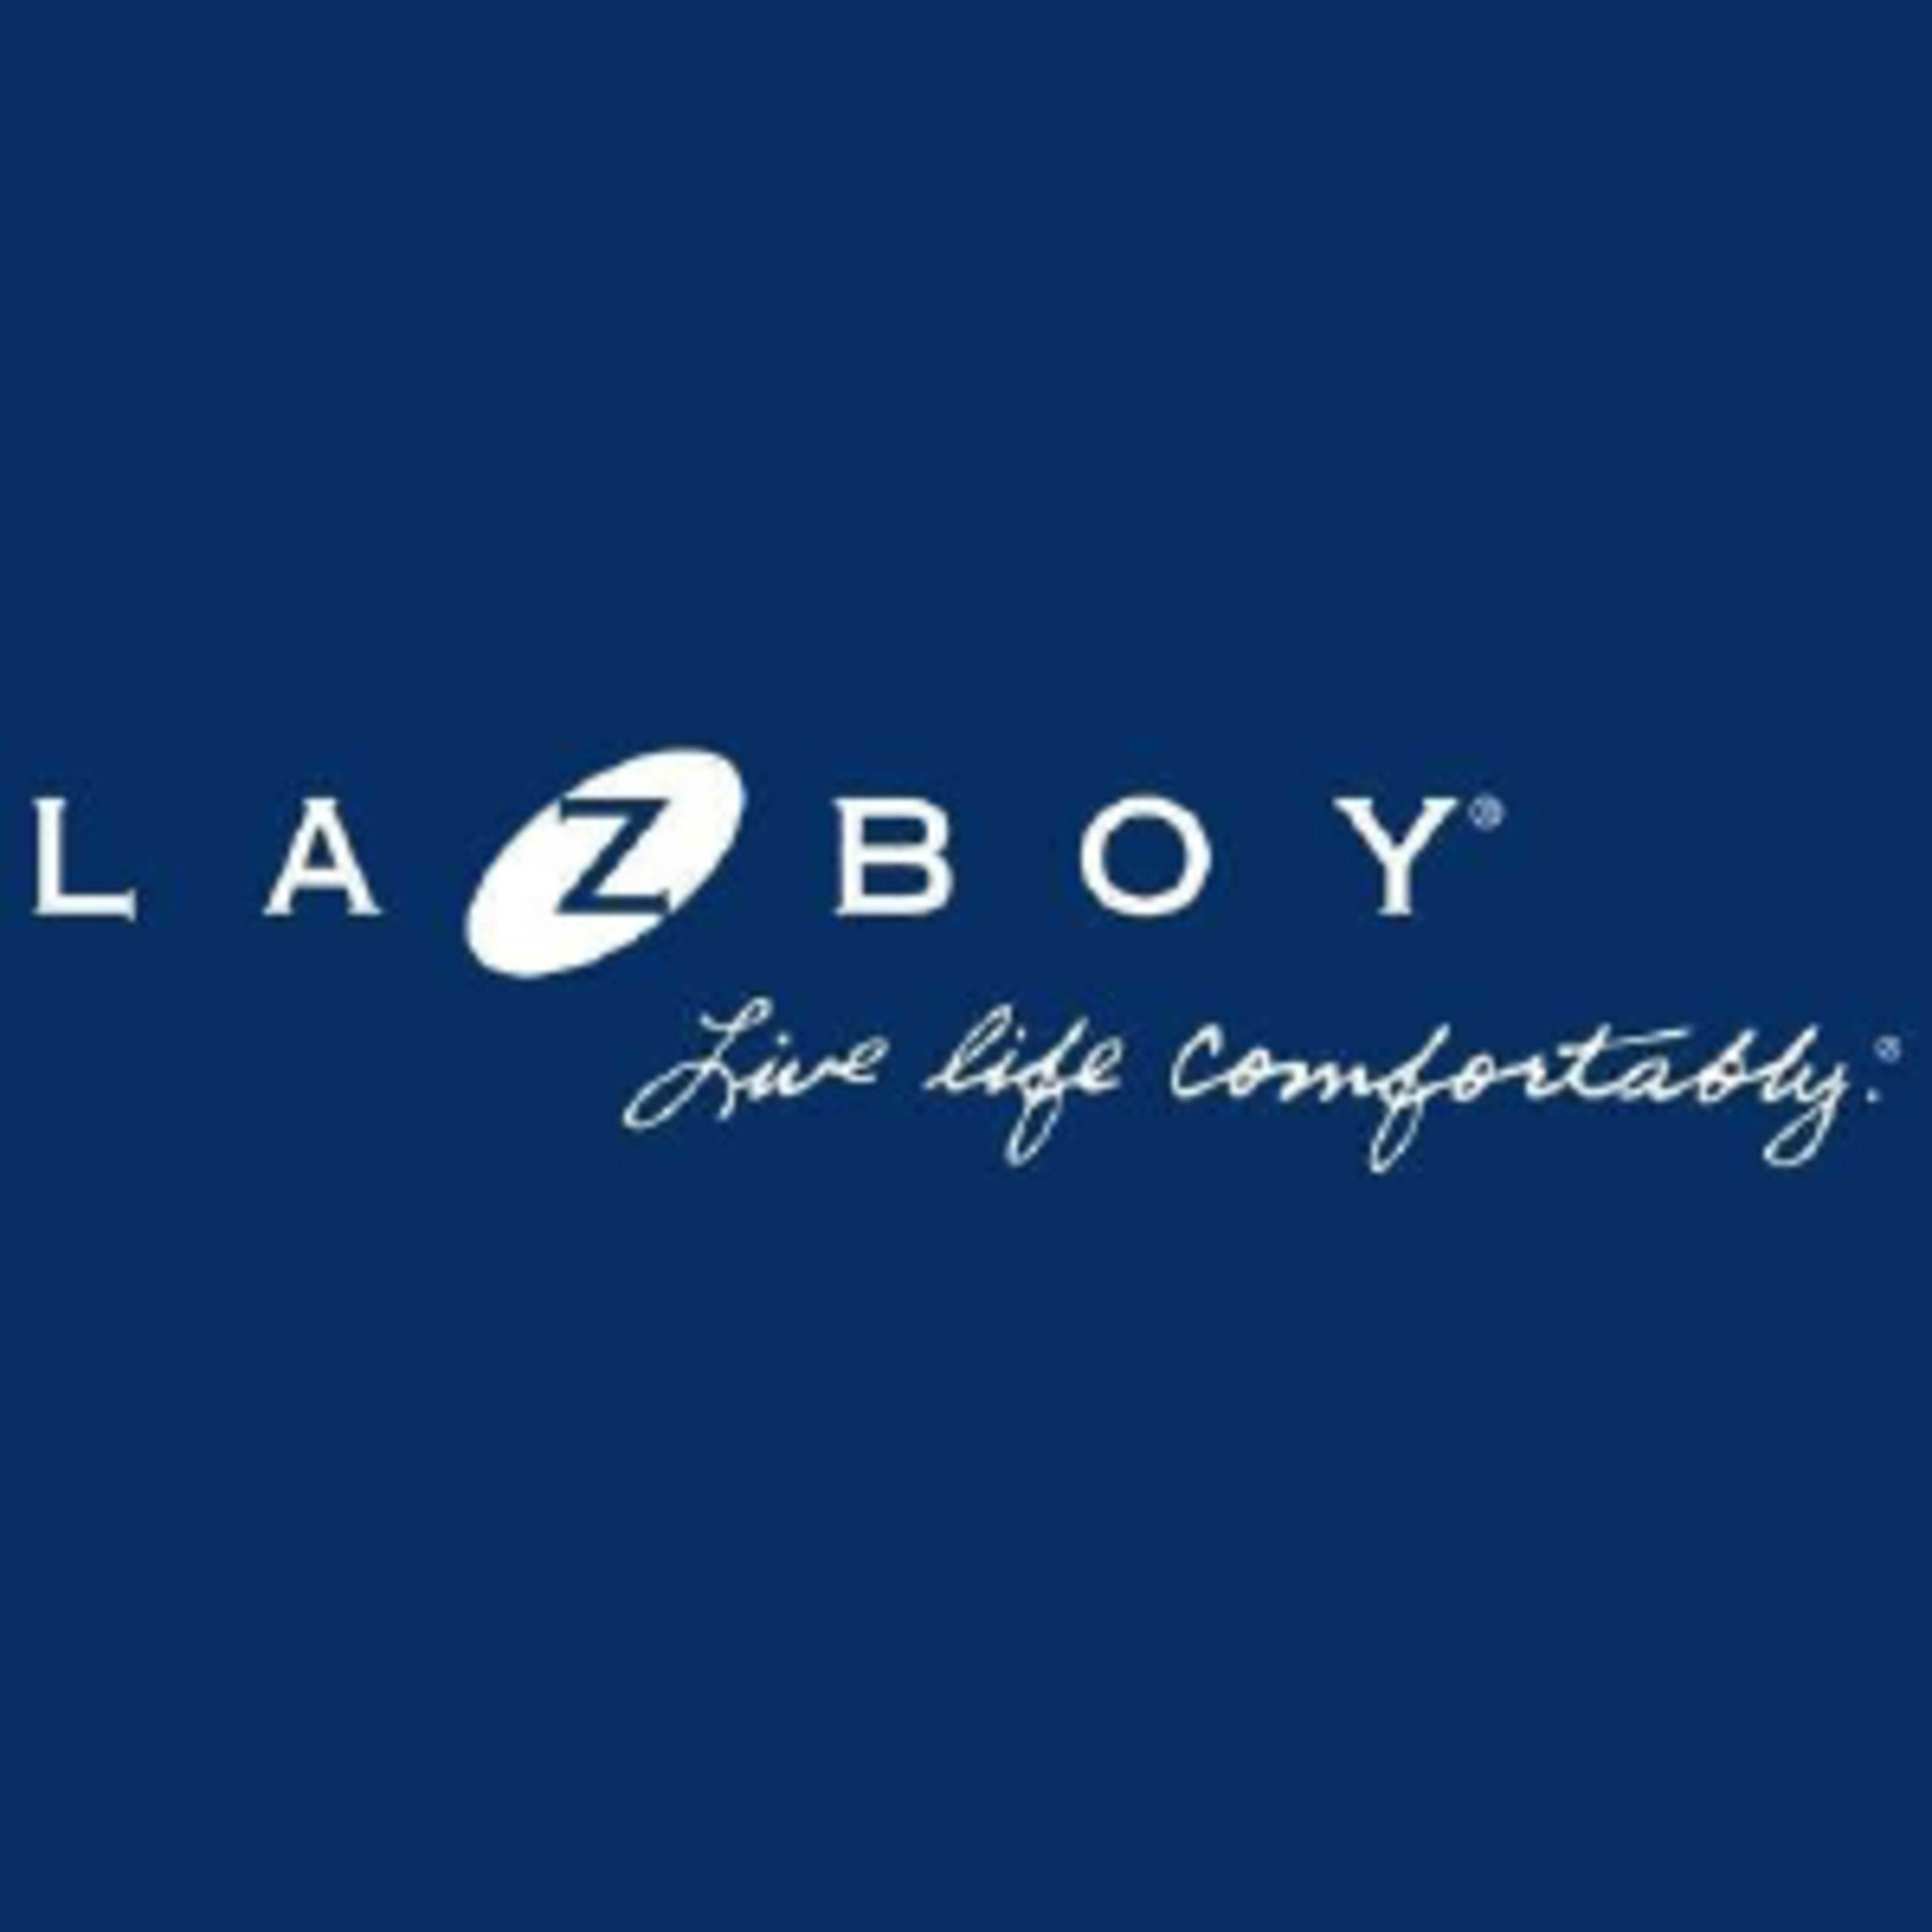 La-Z-Boy Code